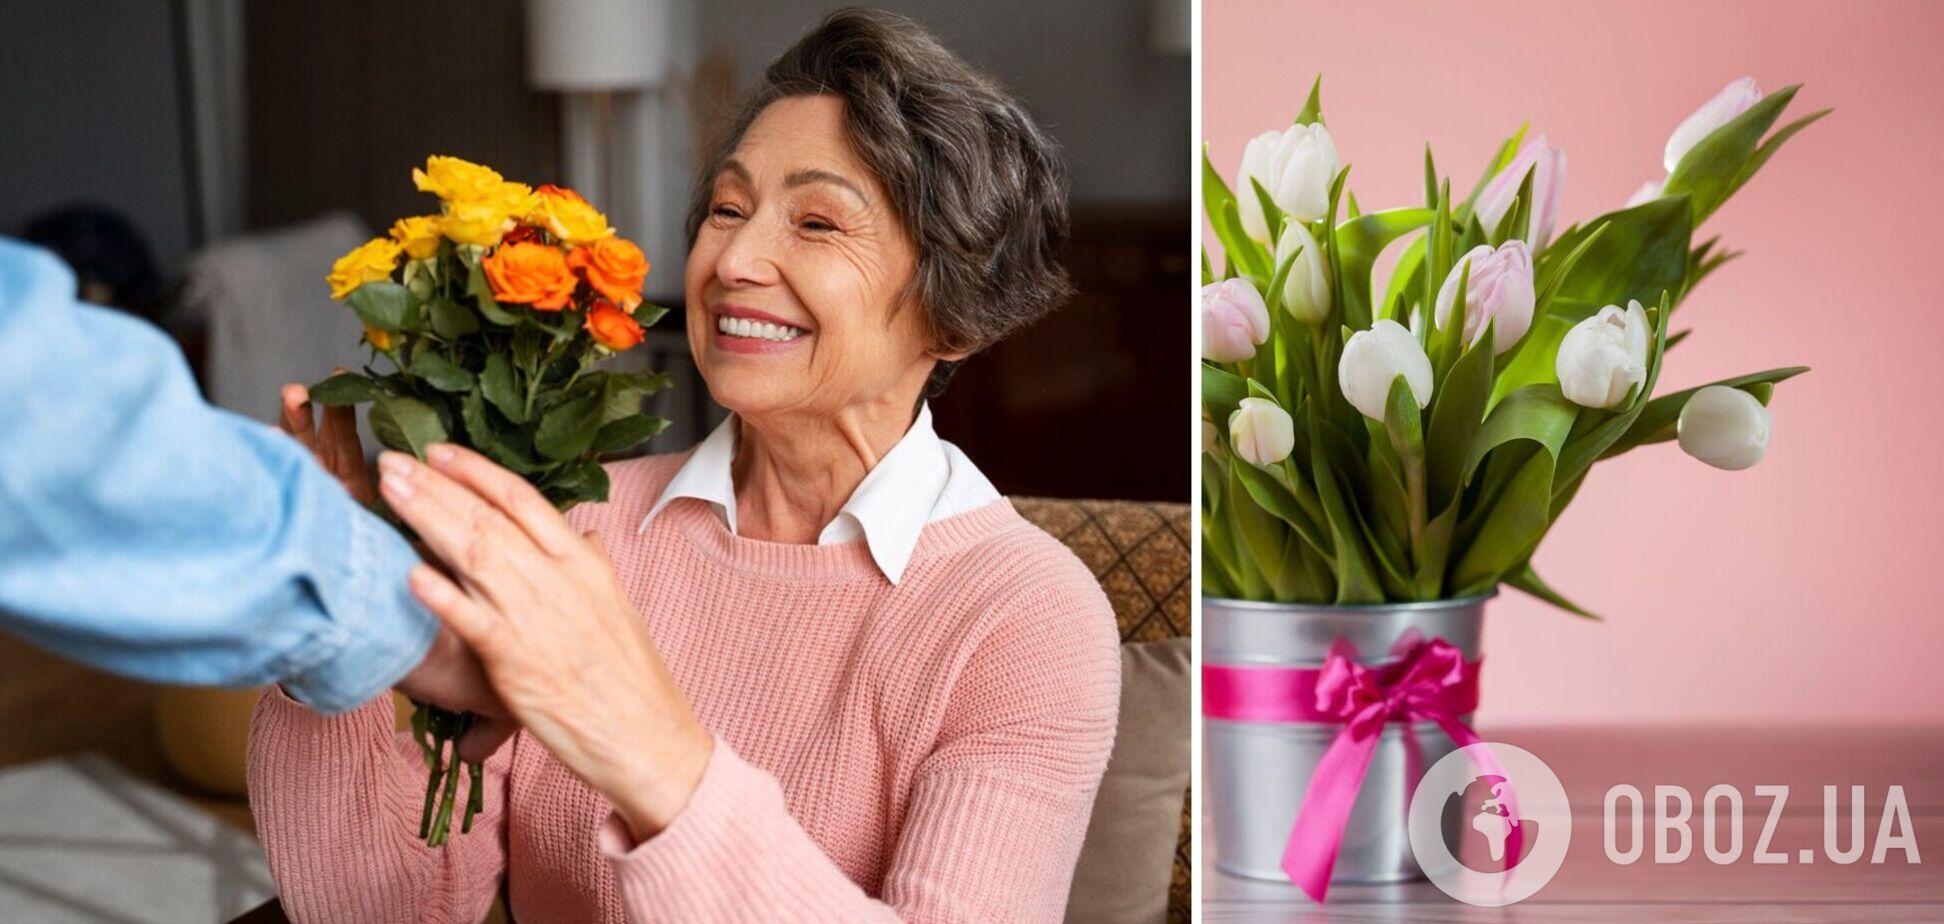 Які квіти подарувати коханій, мамі, сестрі на свято весни: найвдаліші букети